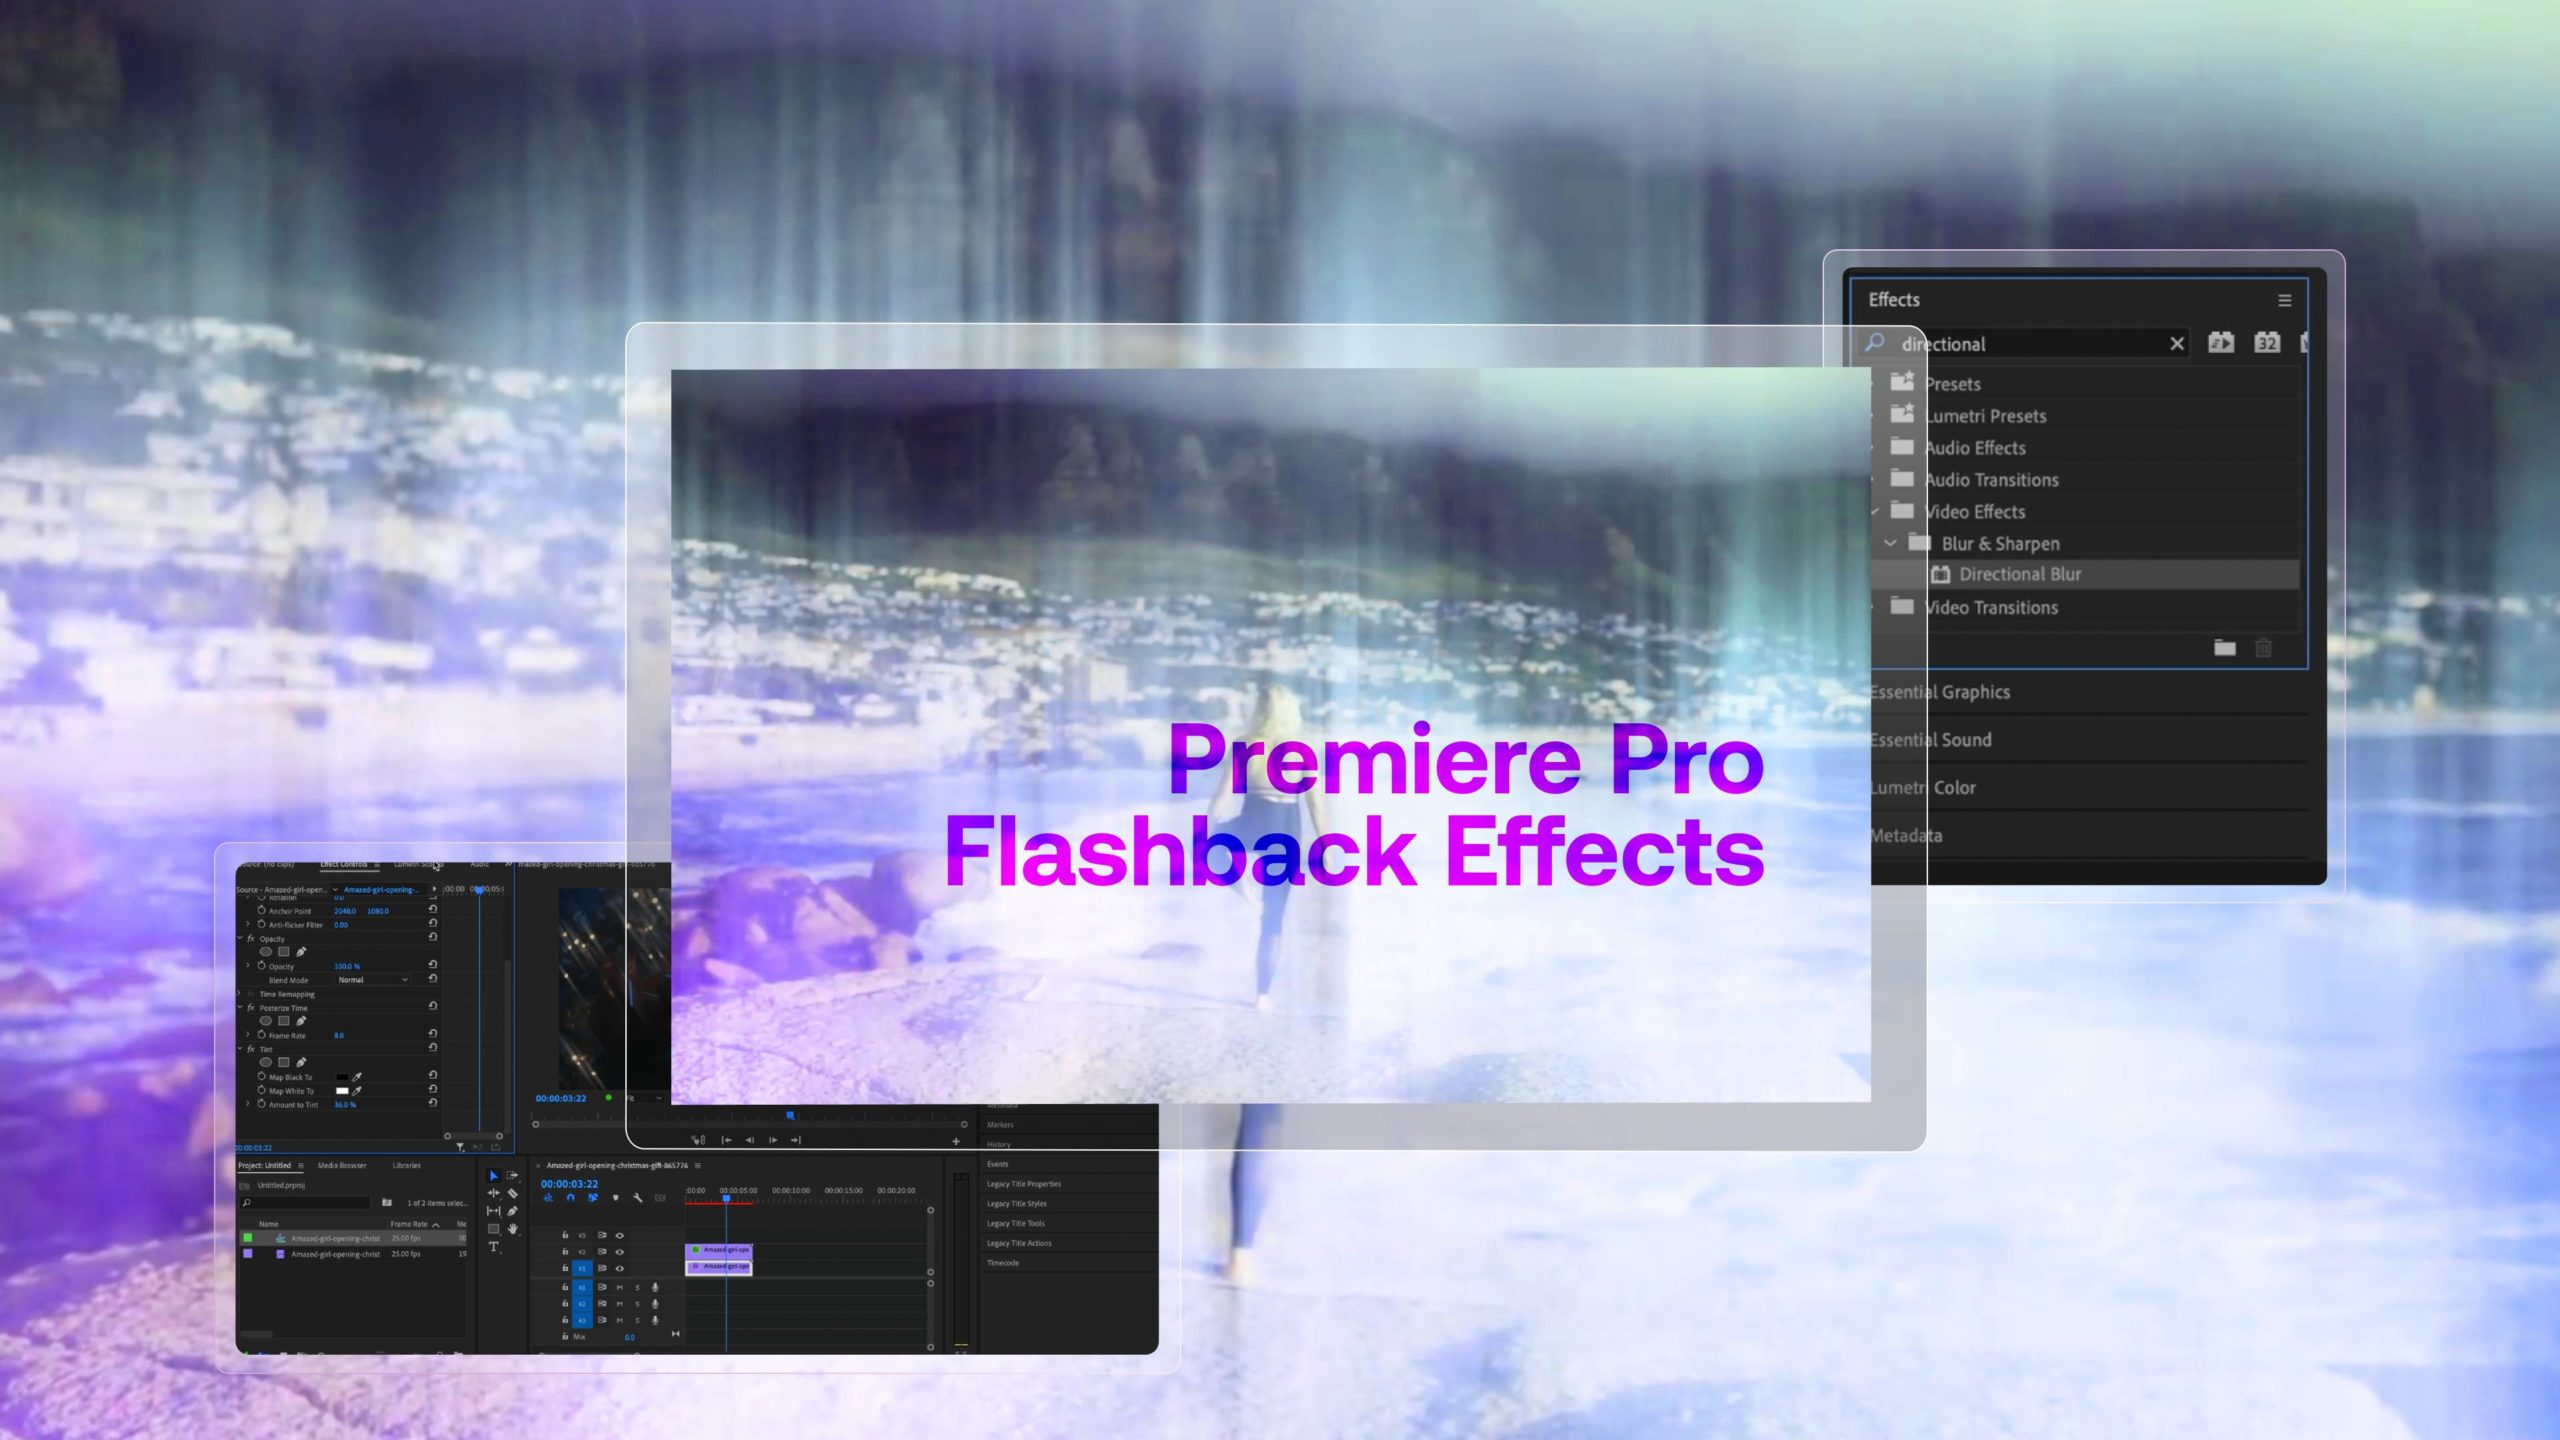 Tận hưởng những kỷ niệm đẹp của bạn với hiệu ứng flashback mơ mộng trên Premiere Pro. Nâng tầm chất lượng video của bạn với 5 cách làm độc đáo. Kiến thức của bạn sẽ được tăng lên một tầm mới! 